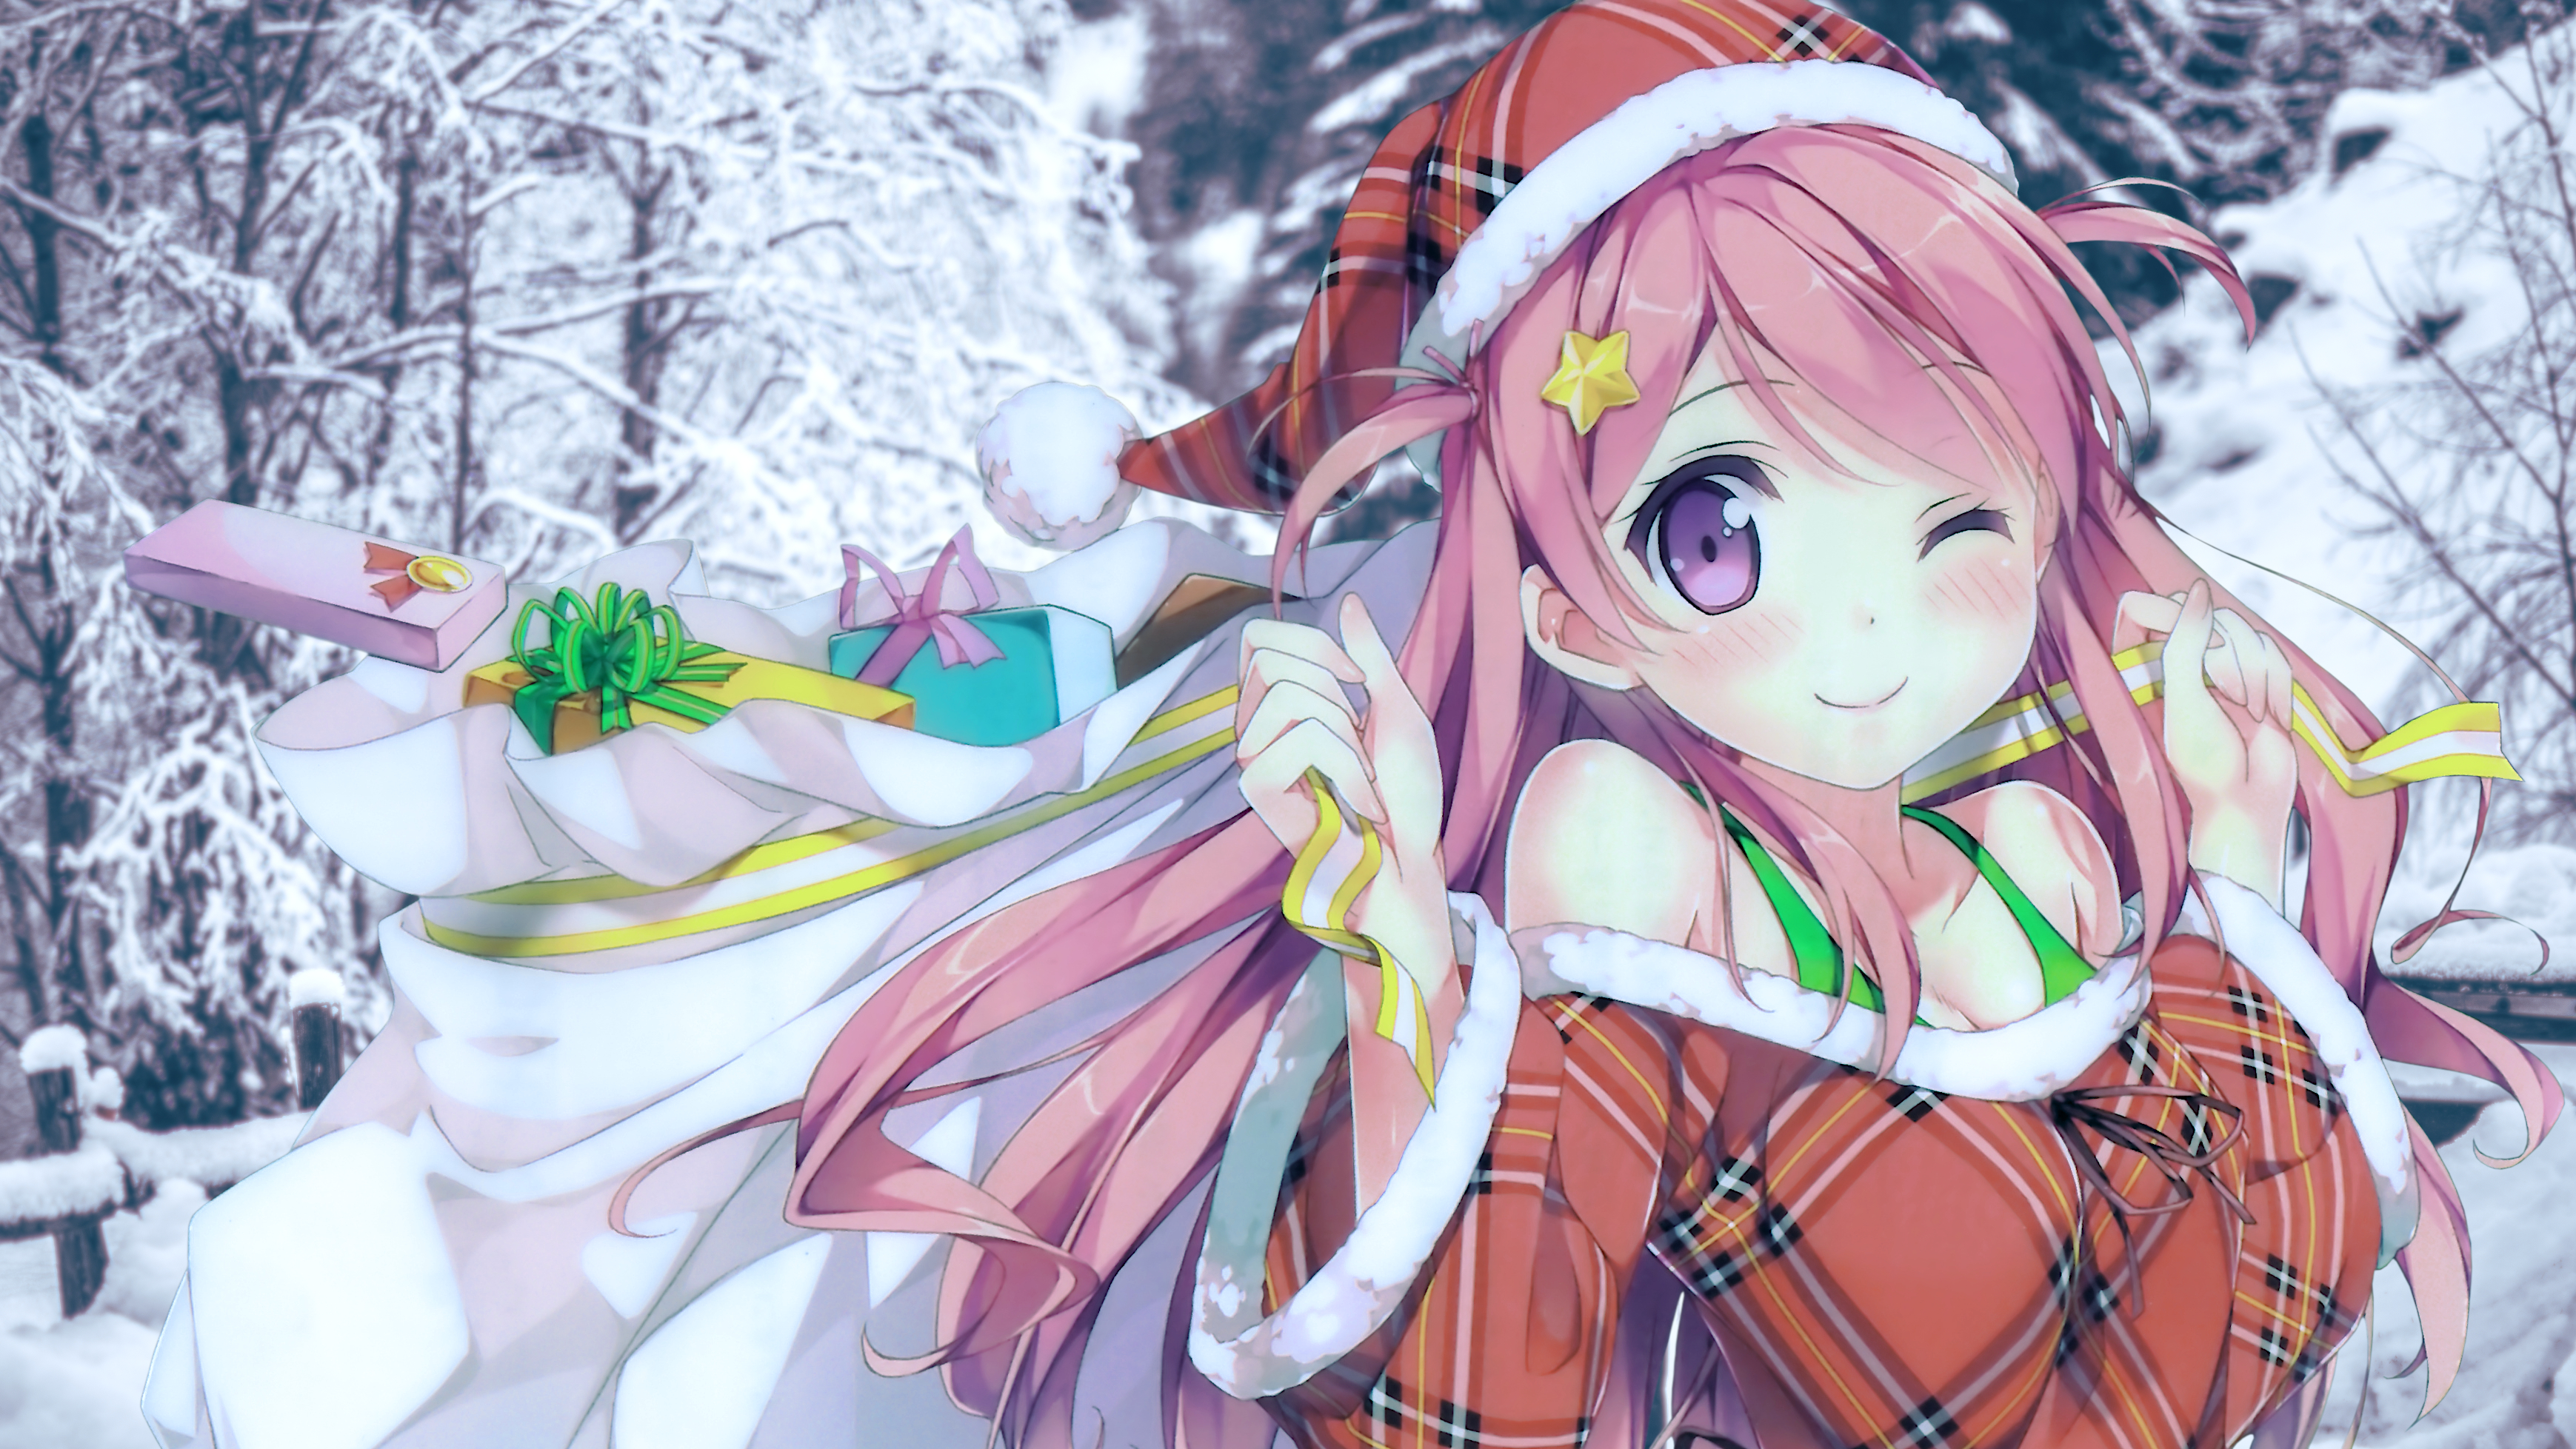 Anime 3478x1957 Kantoku snow covered Christmas presents pink hair purple eyes edit anime girls